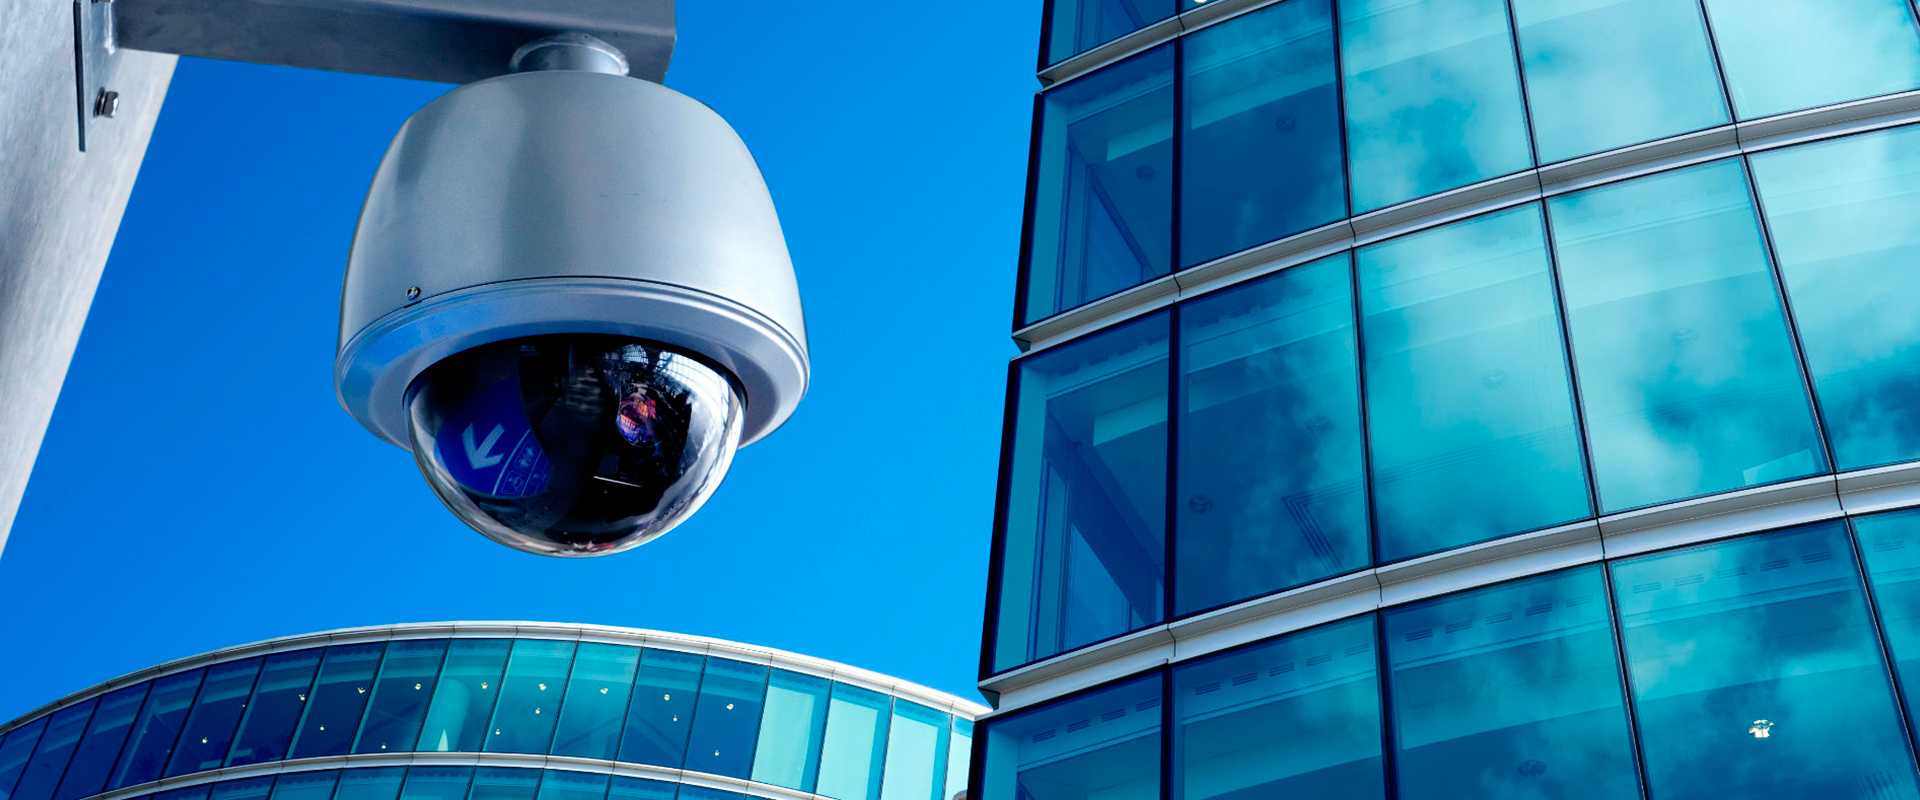 Cámaras seguridad vigilancia CCTV